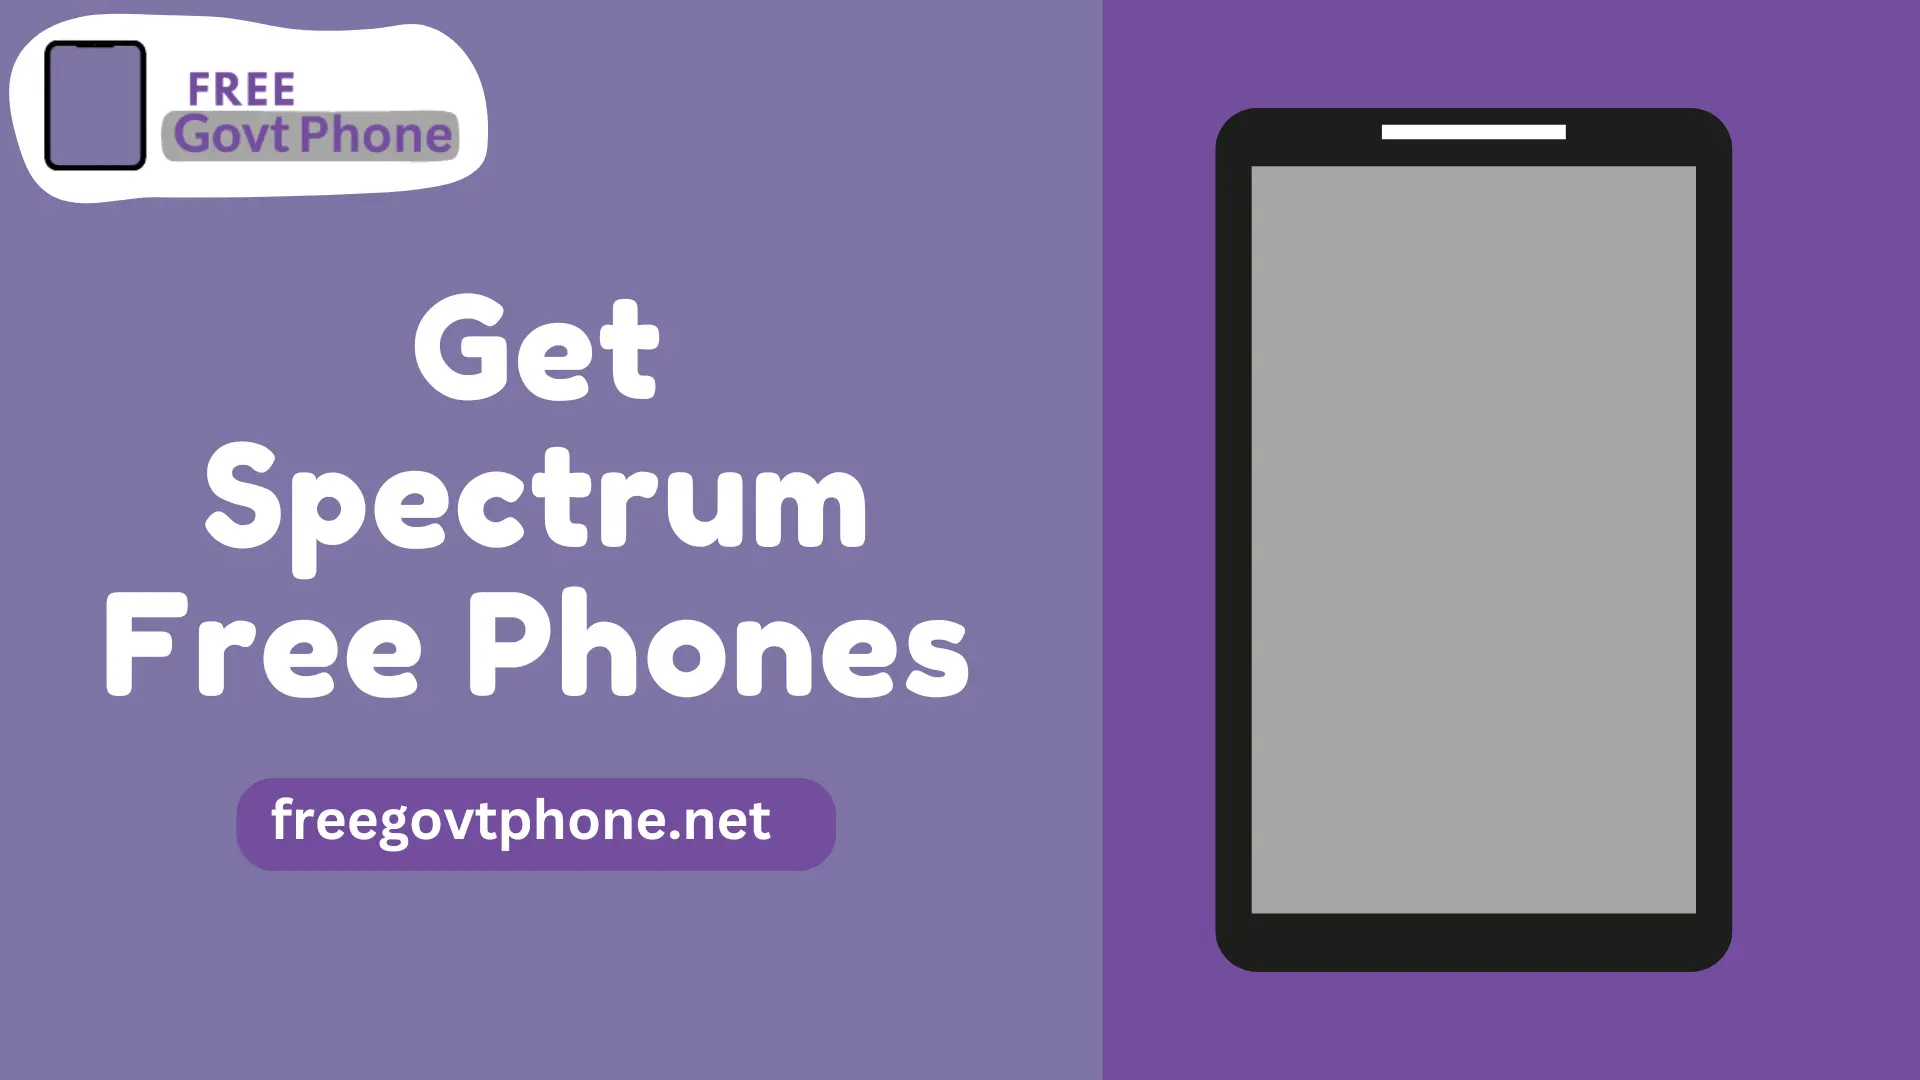 How to Get Spectrum Free Phones